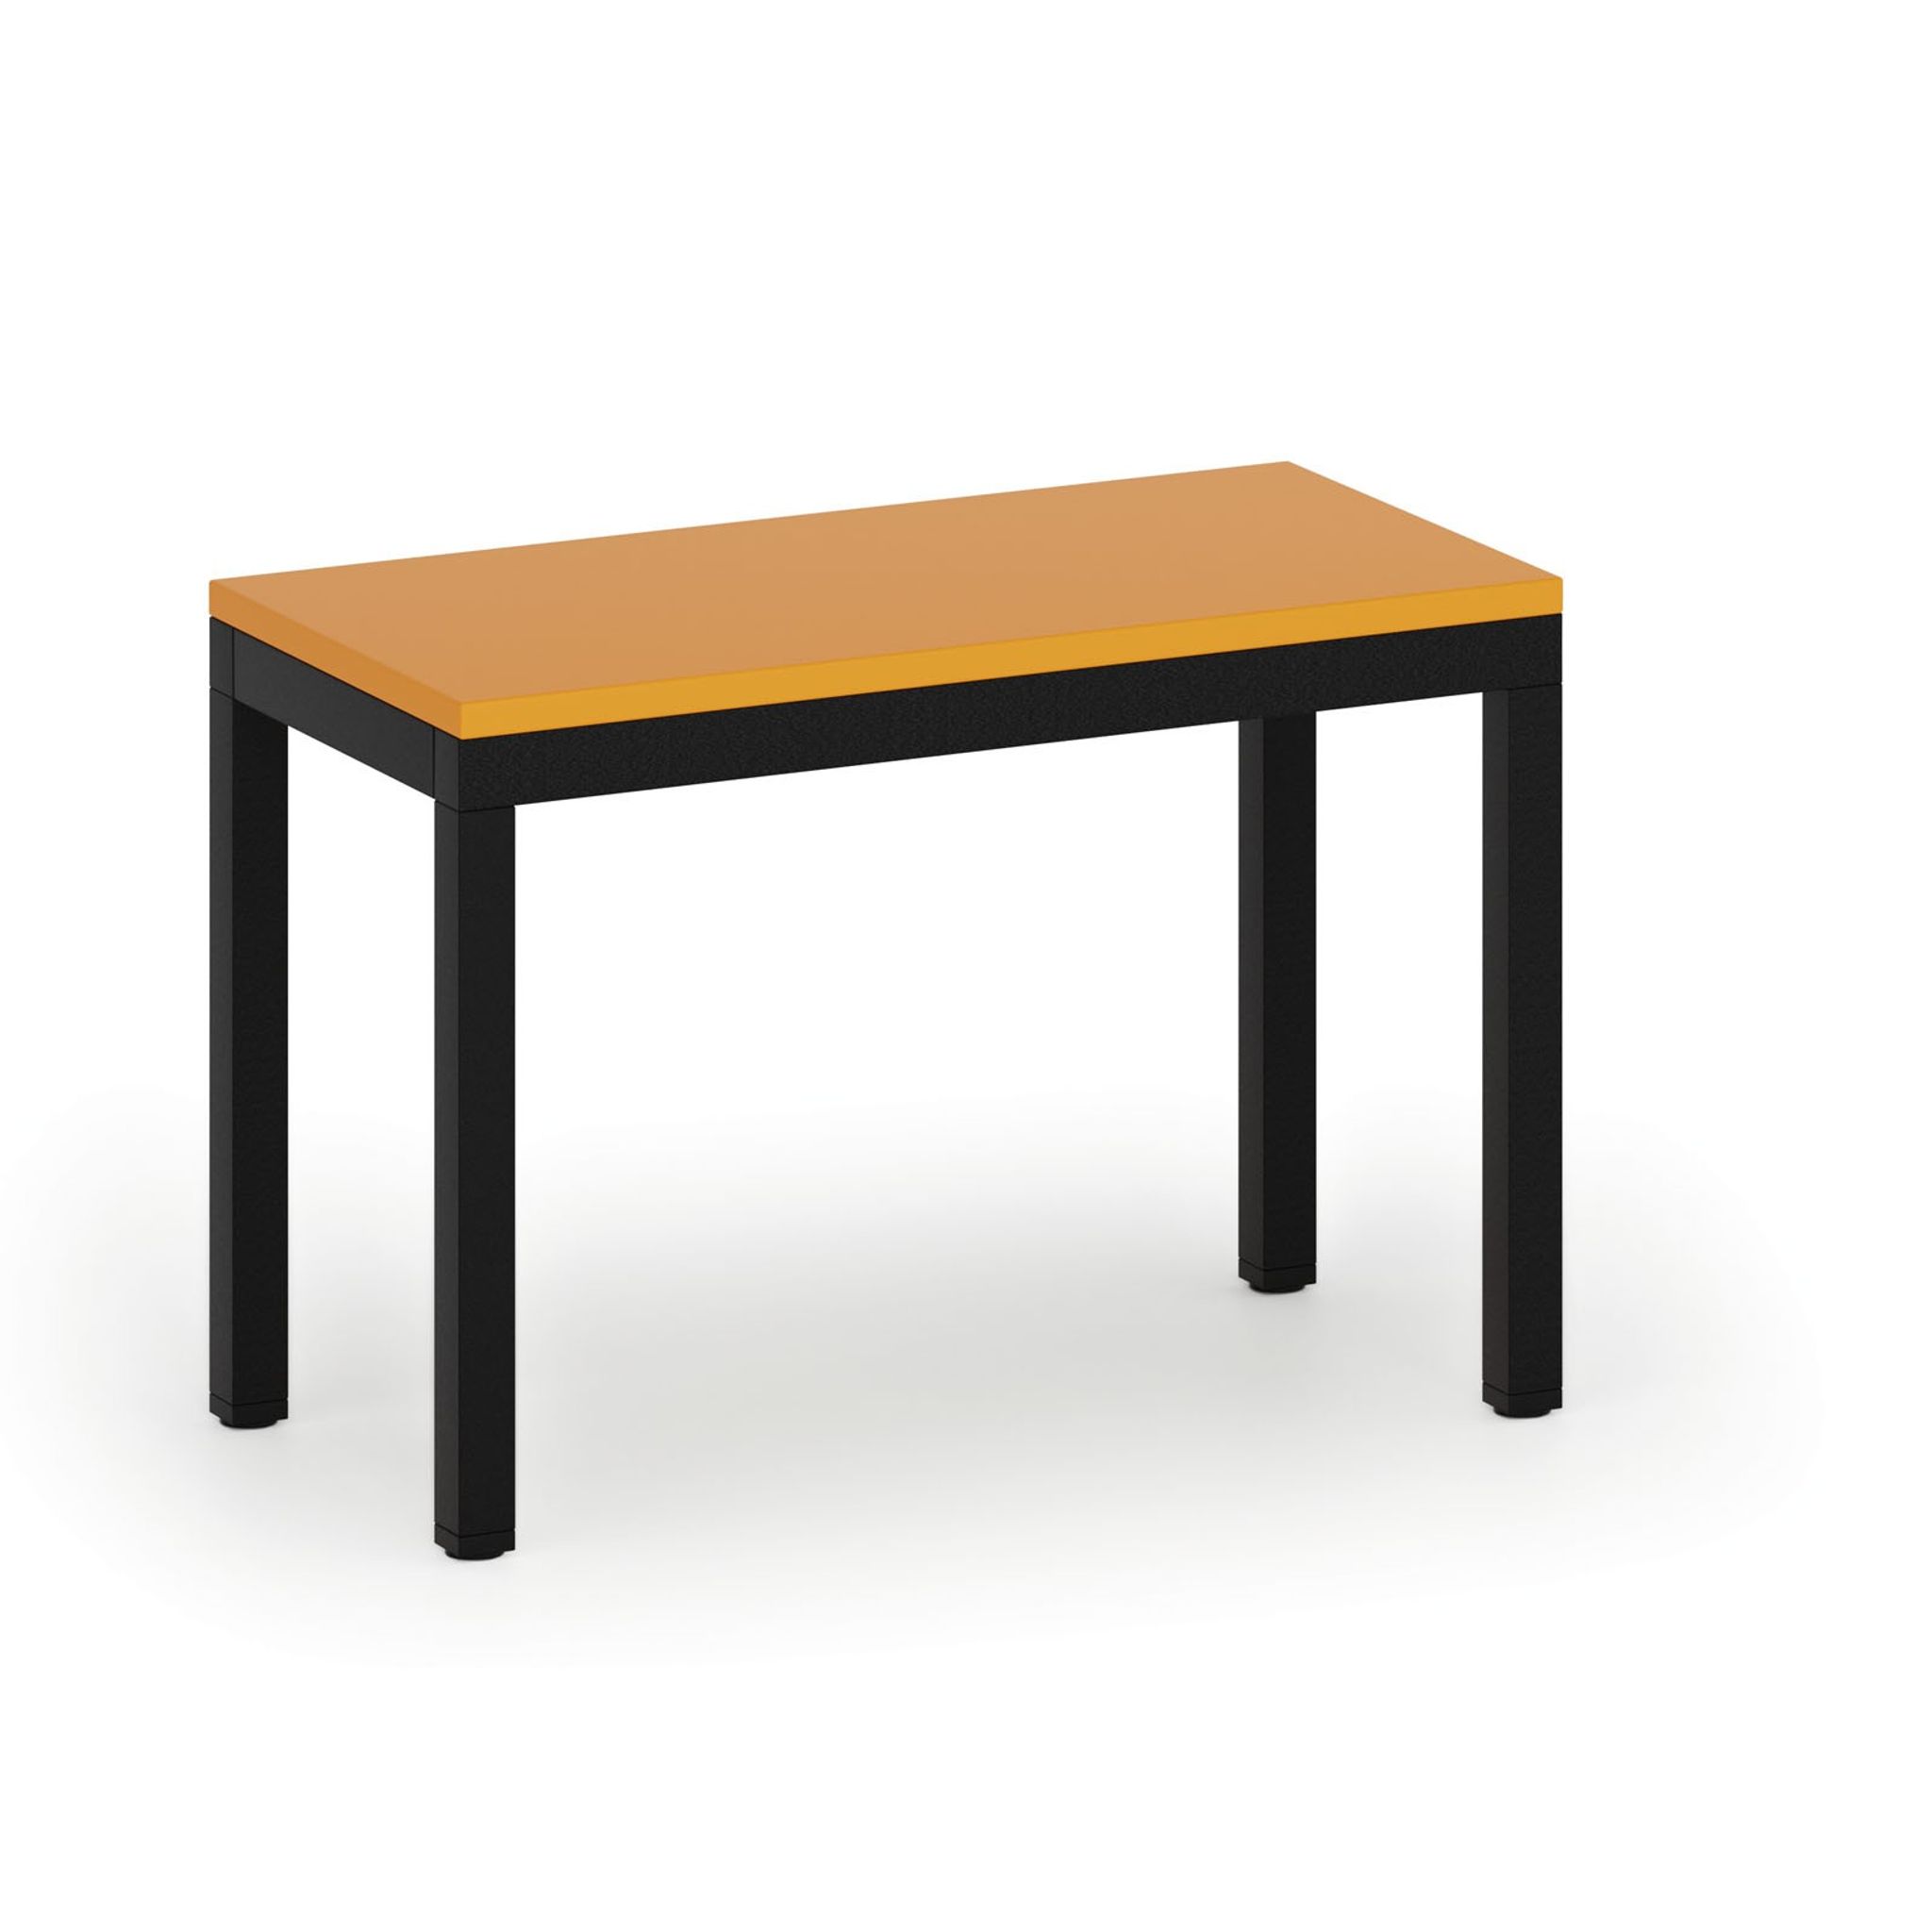 Šatníková lavica, sedák - lamino, dĺžka 600 mm, oranžová